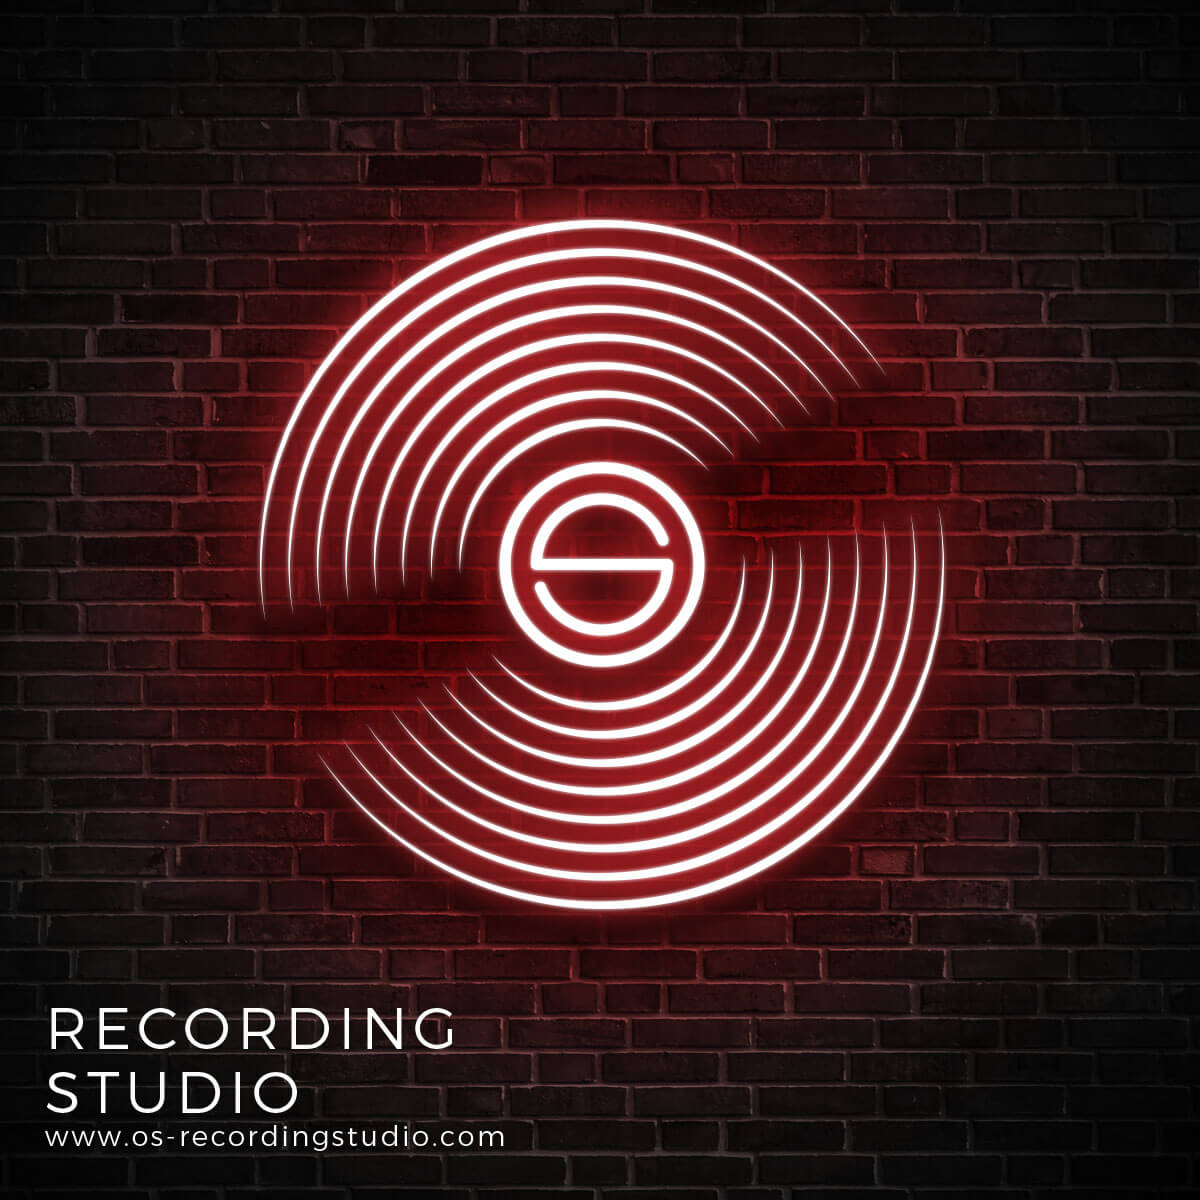 Os Recording Studio neon image